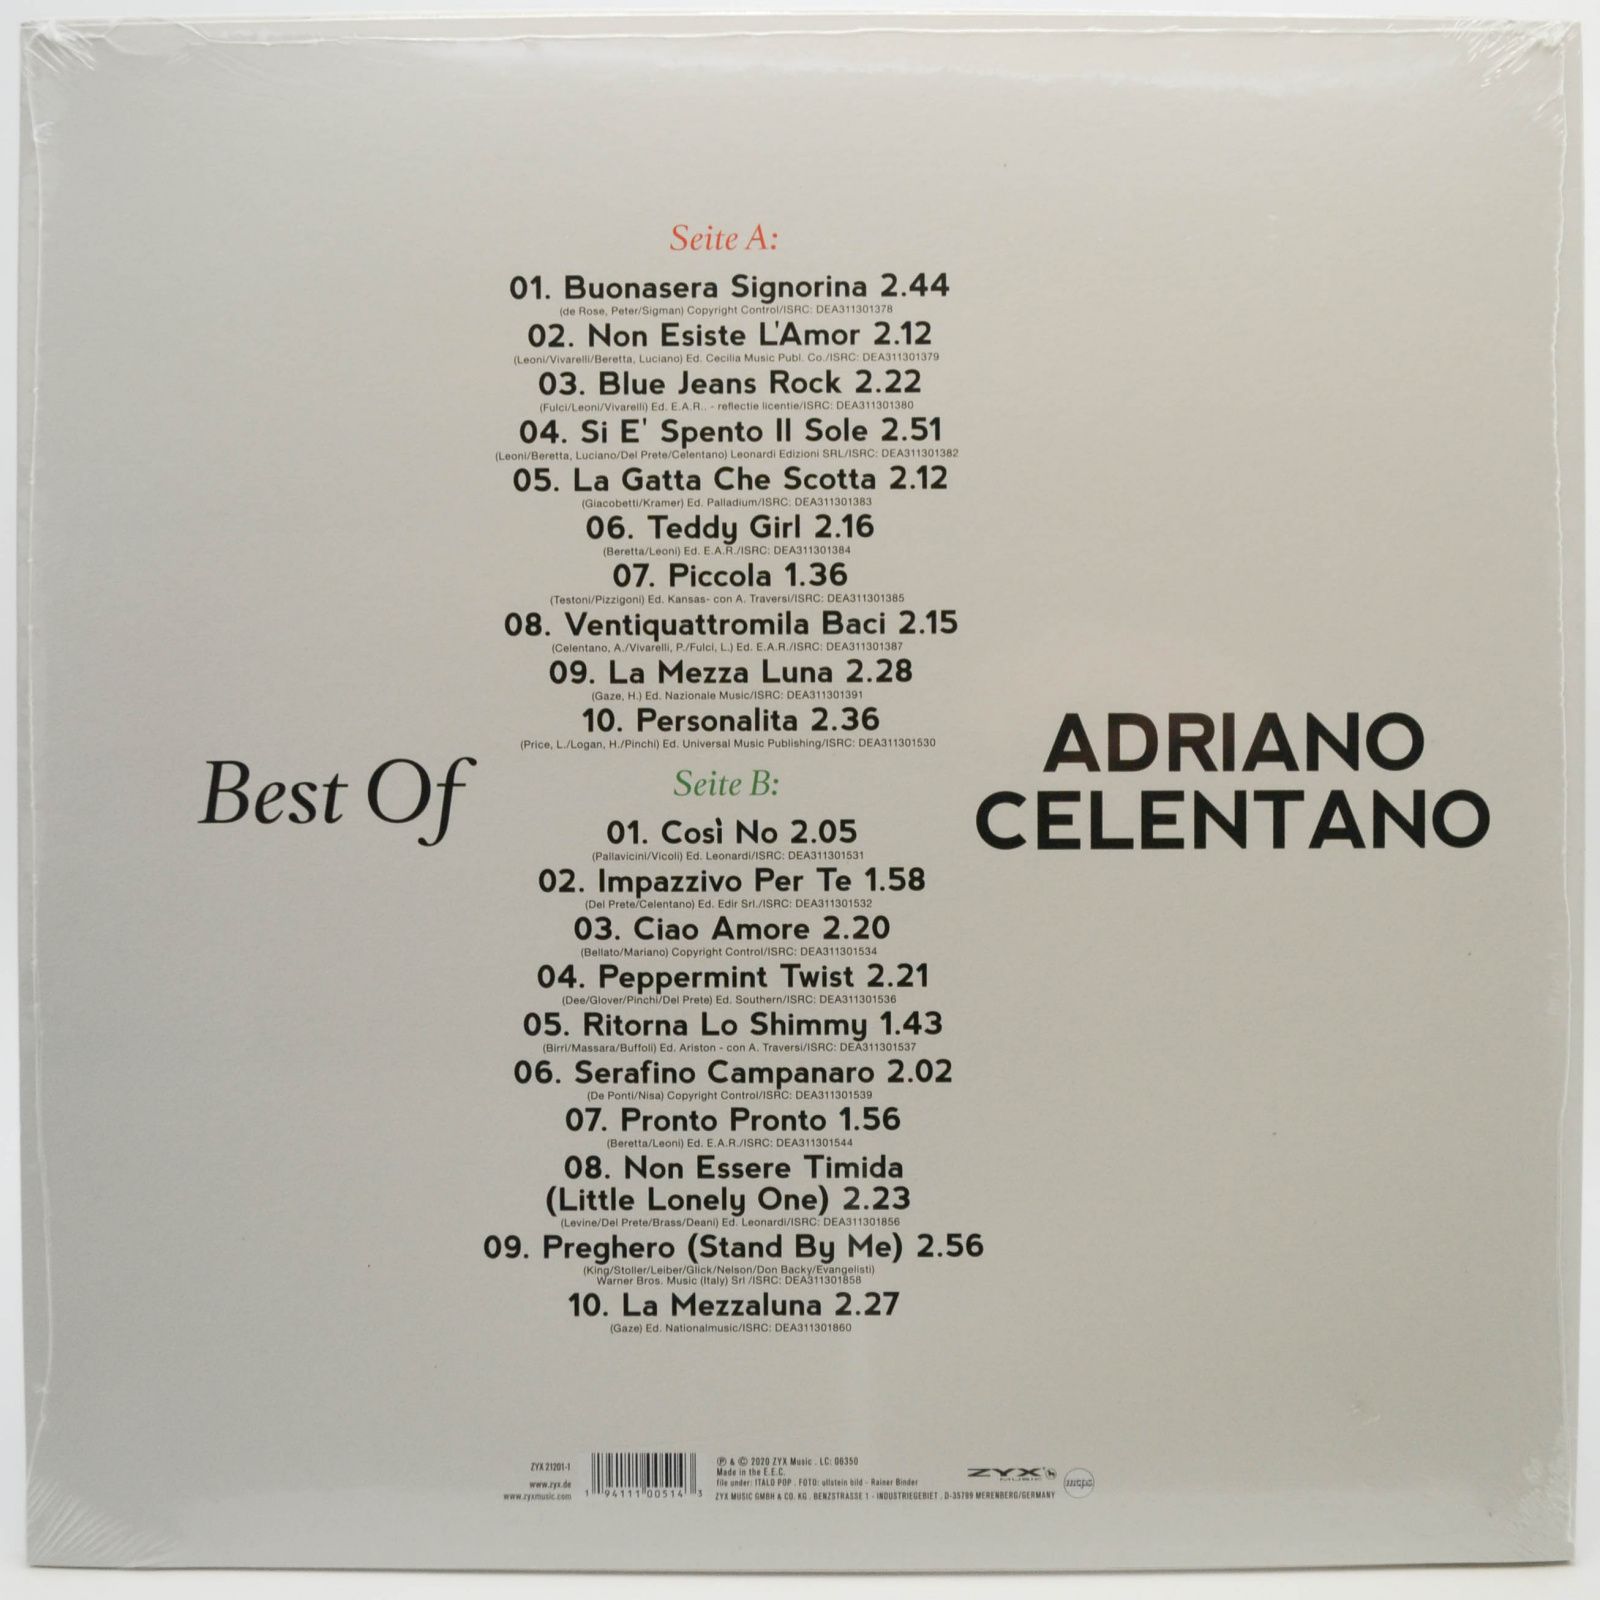 Adriano Celentano — Best Of, 2020